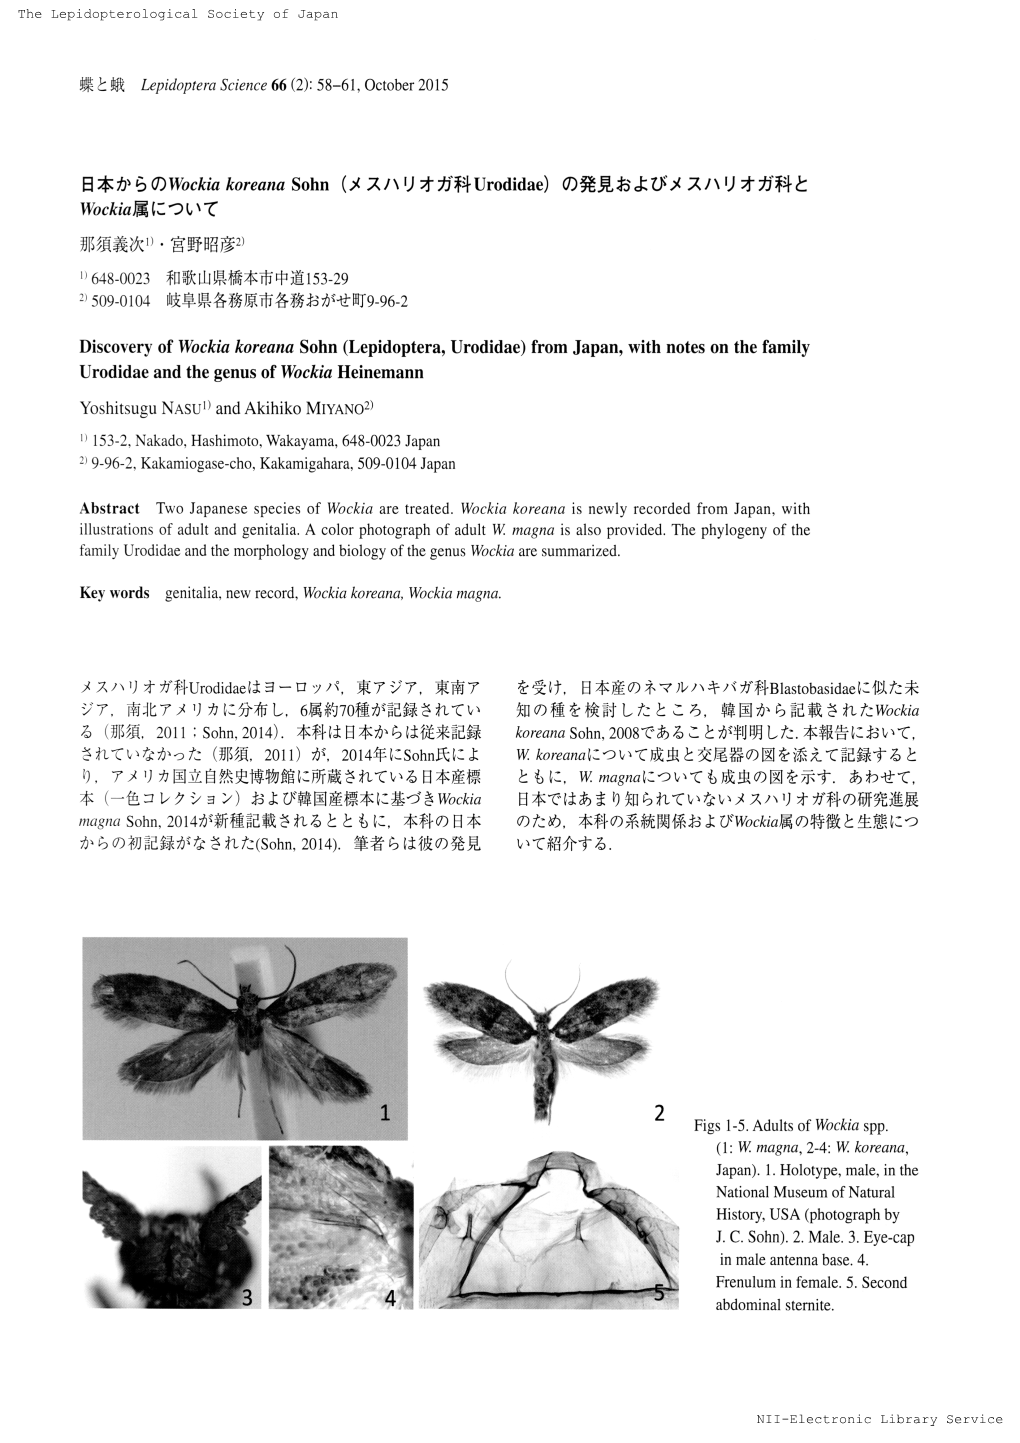 Discovery of Wockia Koreana Sohn（Lepidoptera， Urodidae）